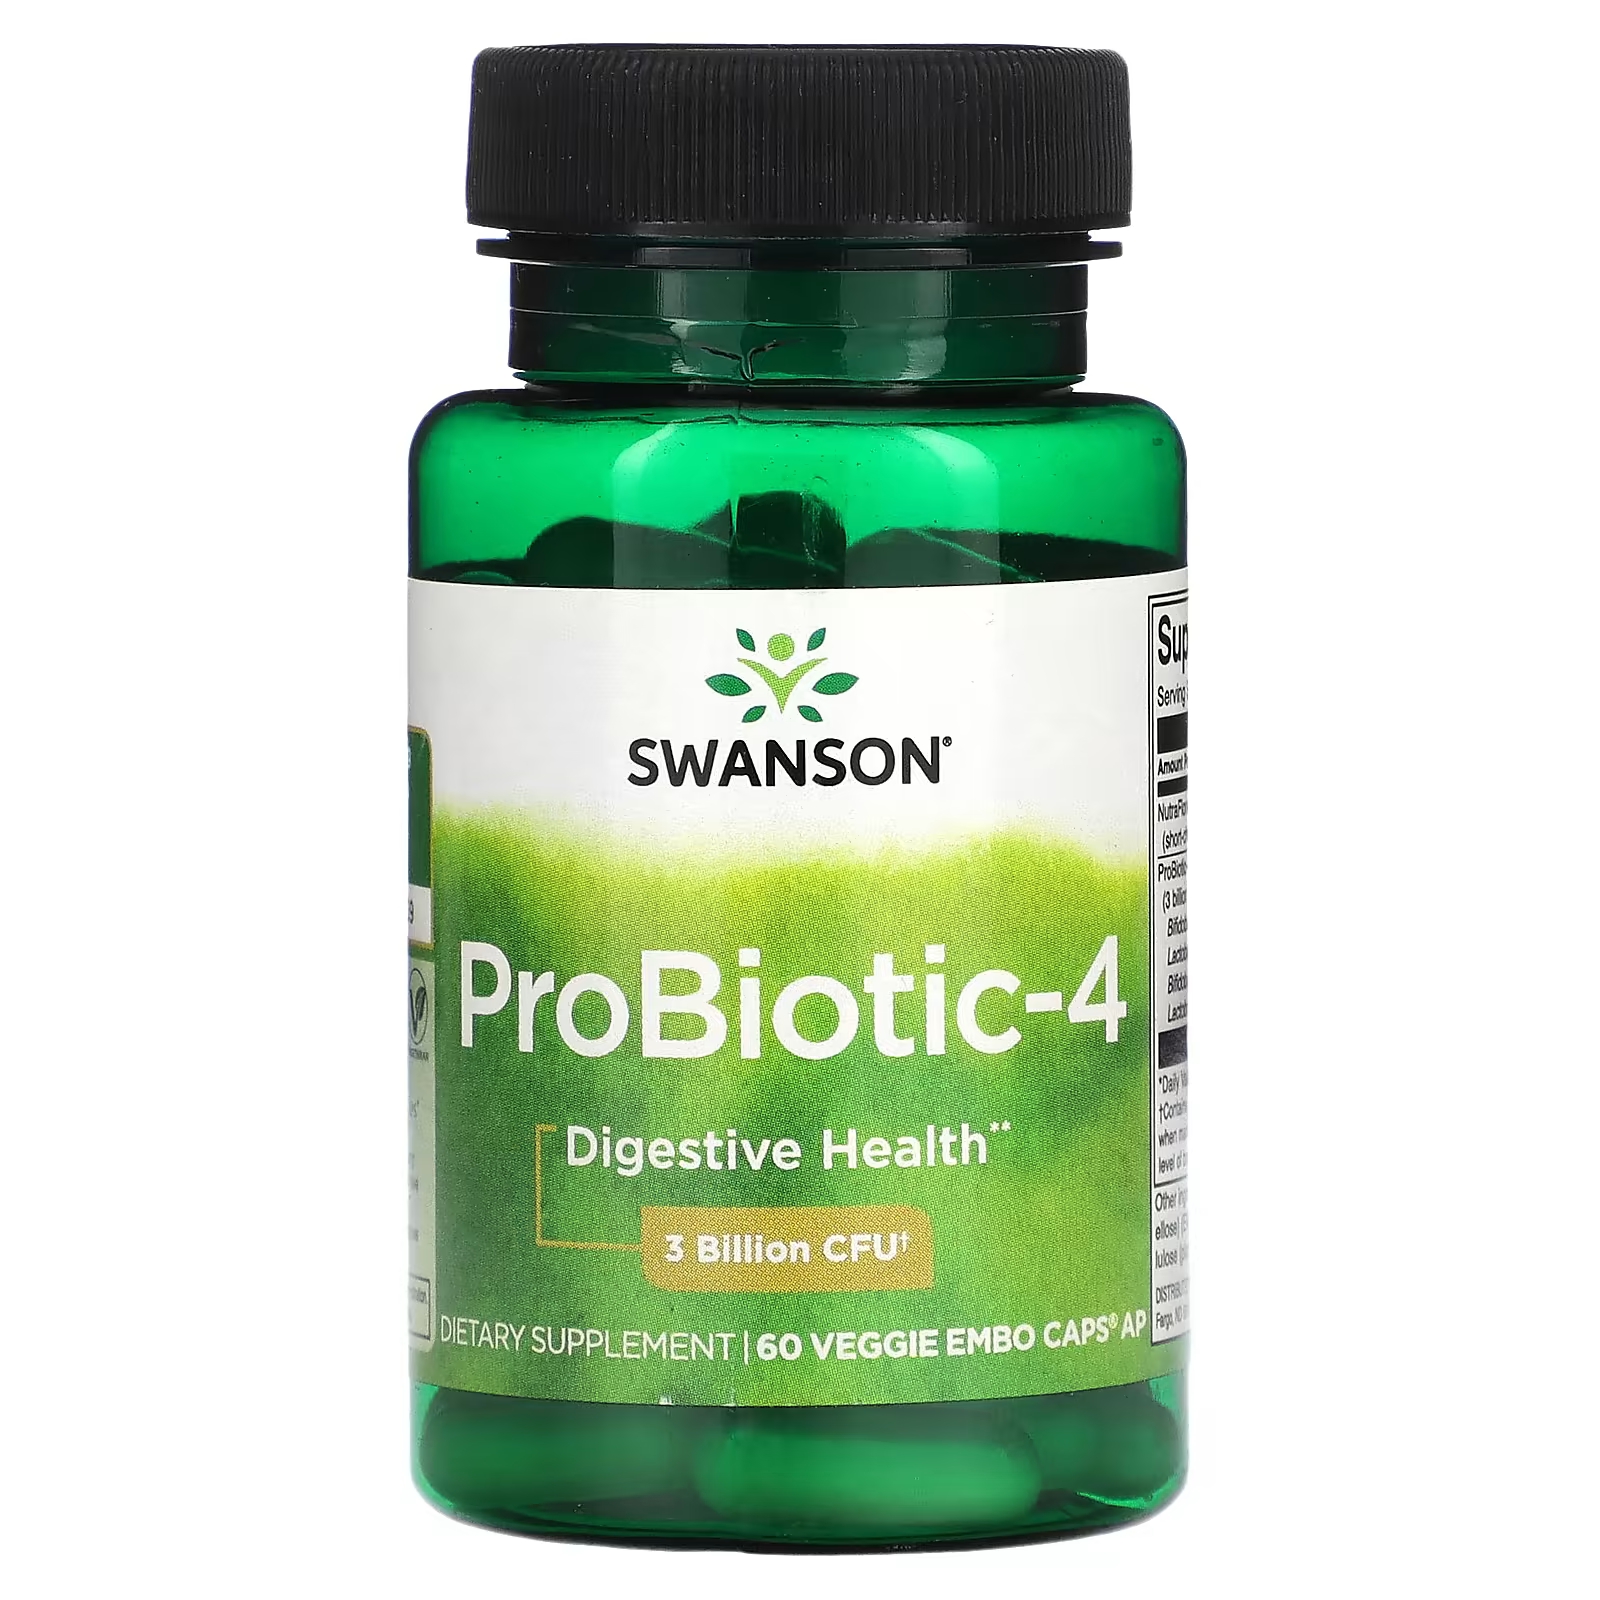 Пищевая добавка Swanson Probiotic 4.3 Billion CFU, 60 капсул пищевая добавка swanson probiotic 4 3 billion cfu 60 капсул